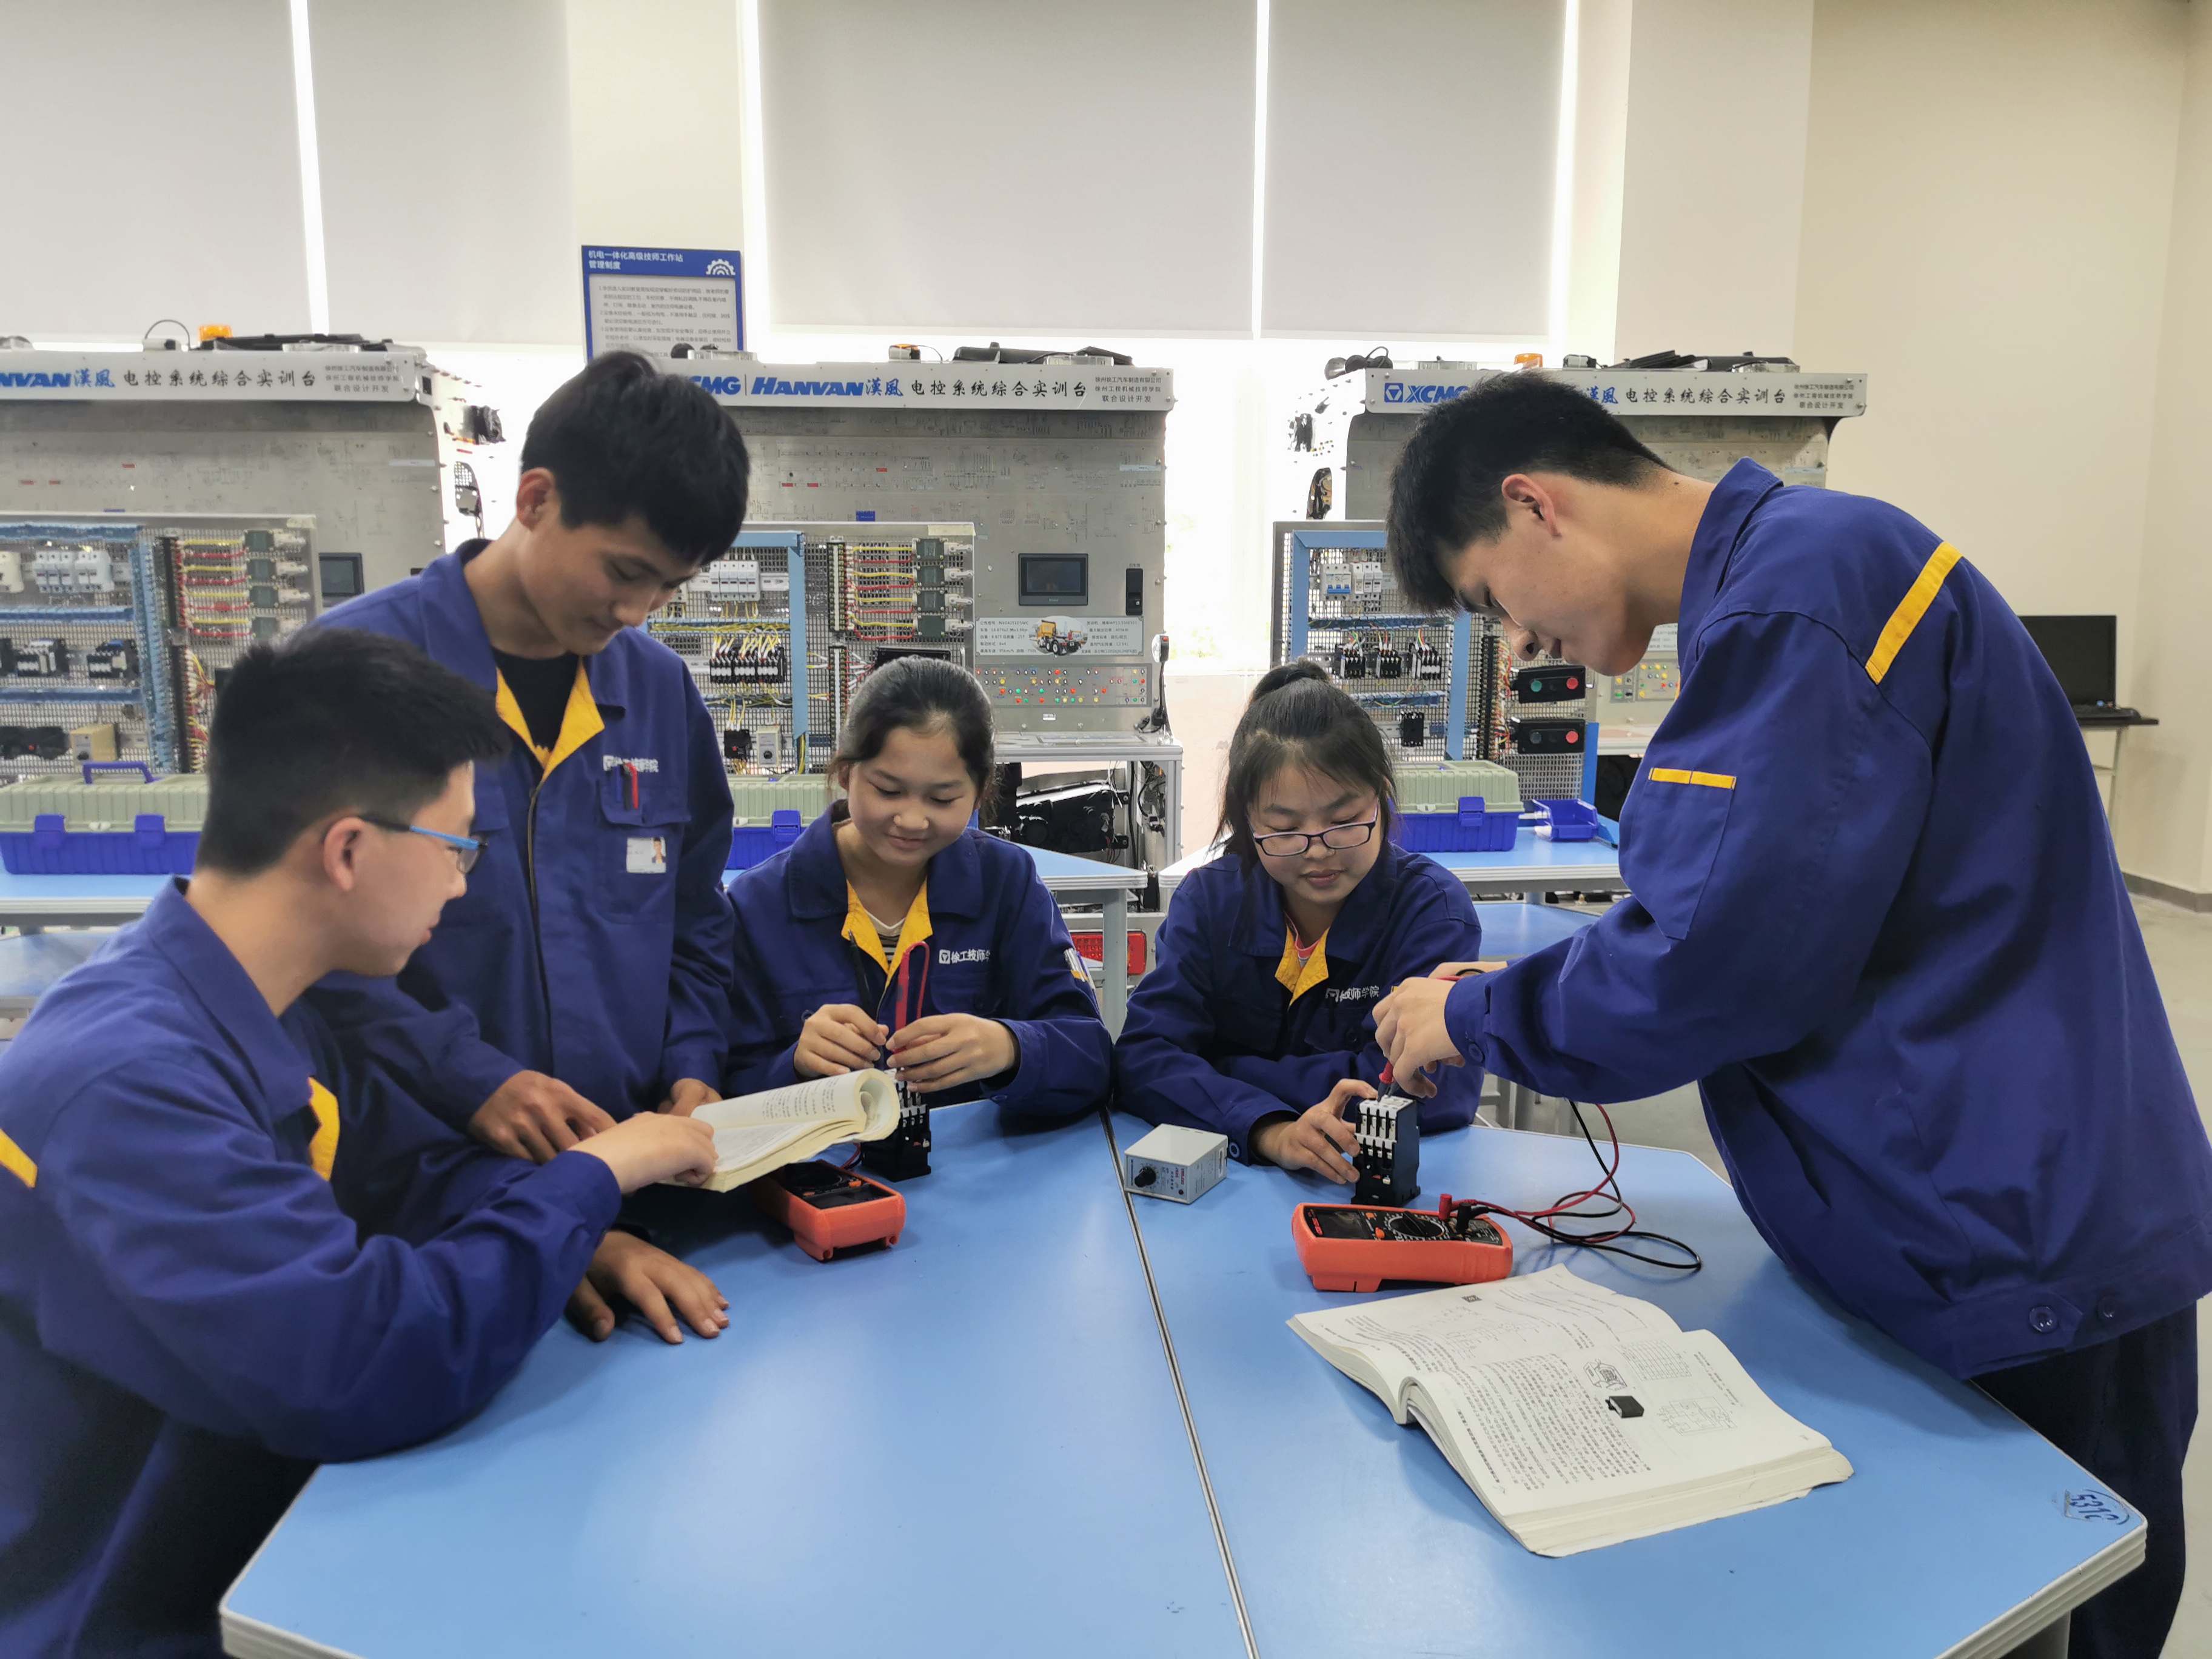 设备电气系统安装与检修课上同学们在进行电气元器件的检测